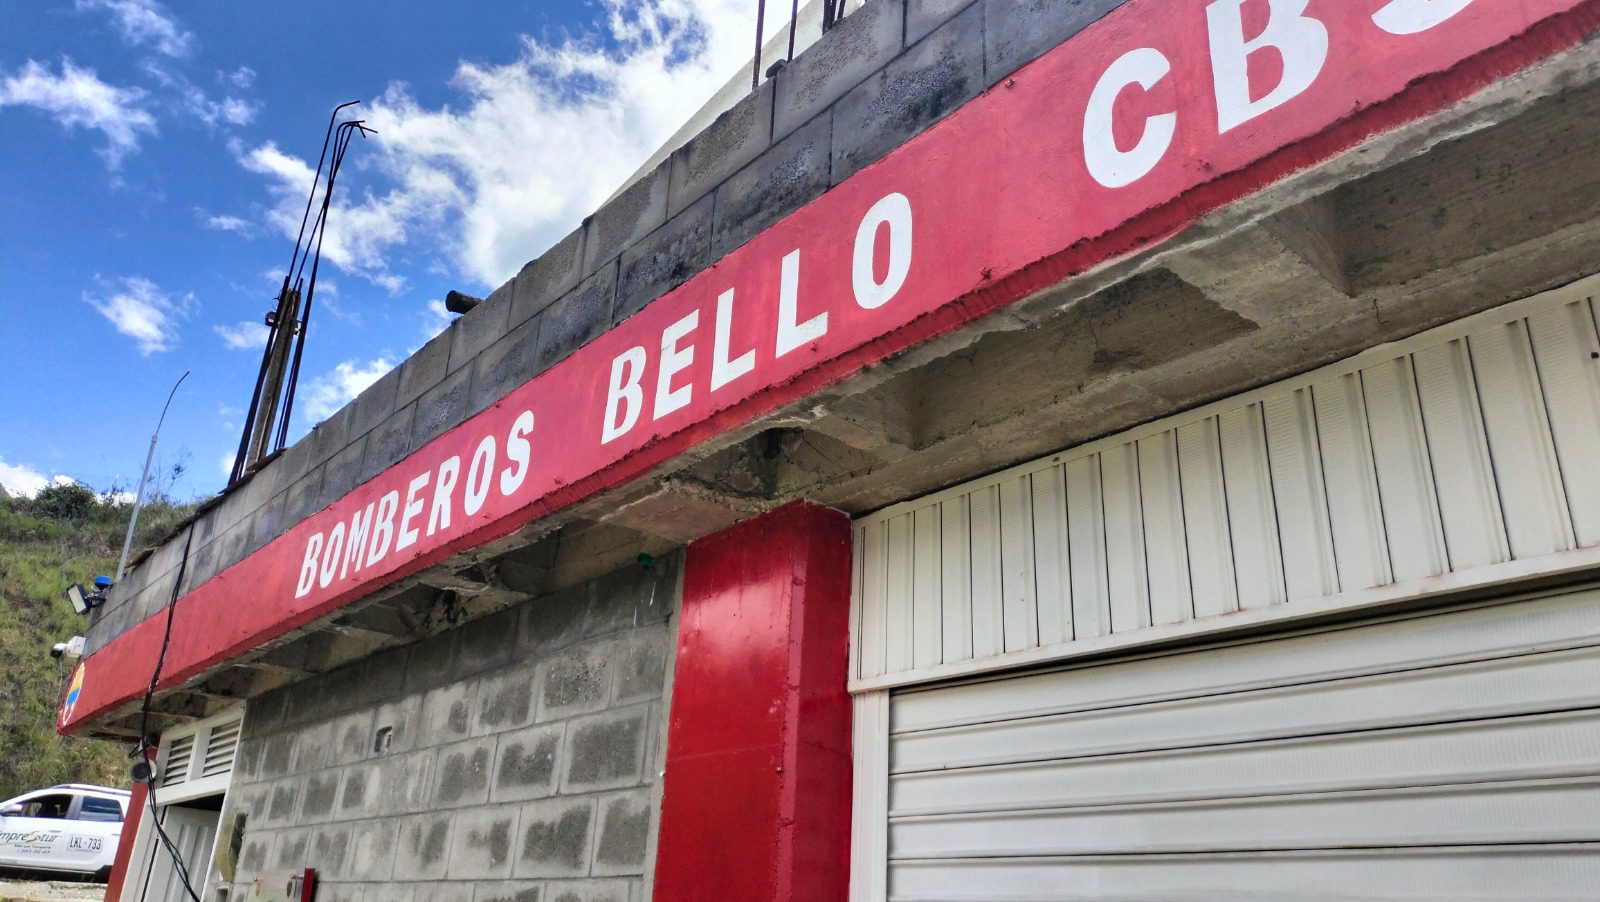 Ladrón robó a los bomberos de Bello: esto se llevó